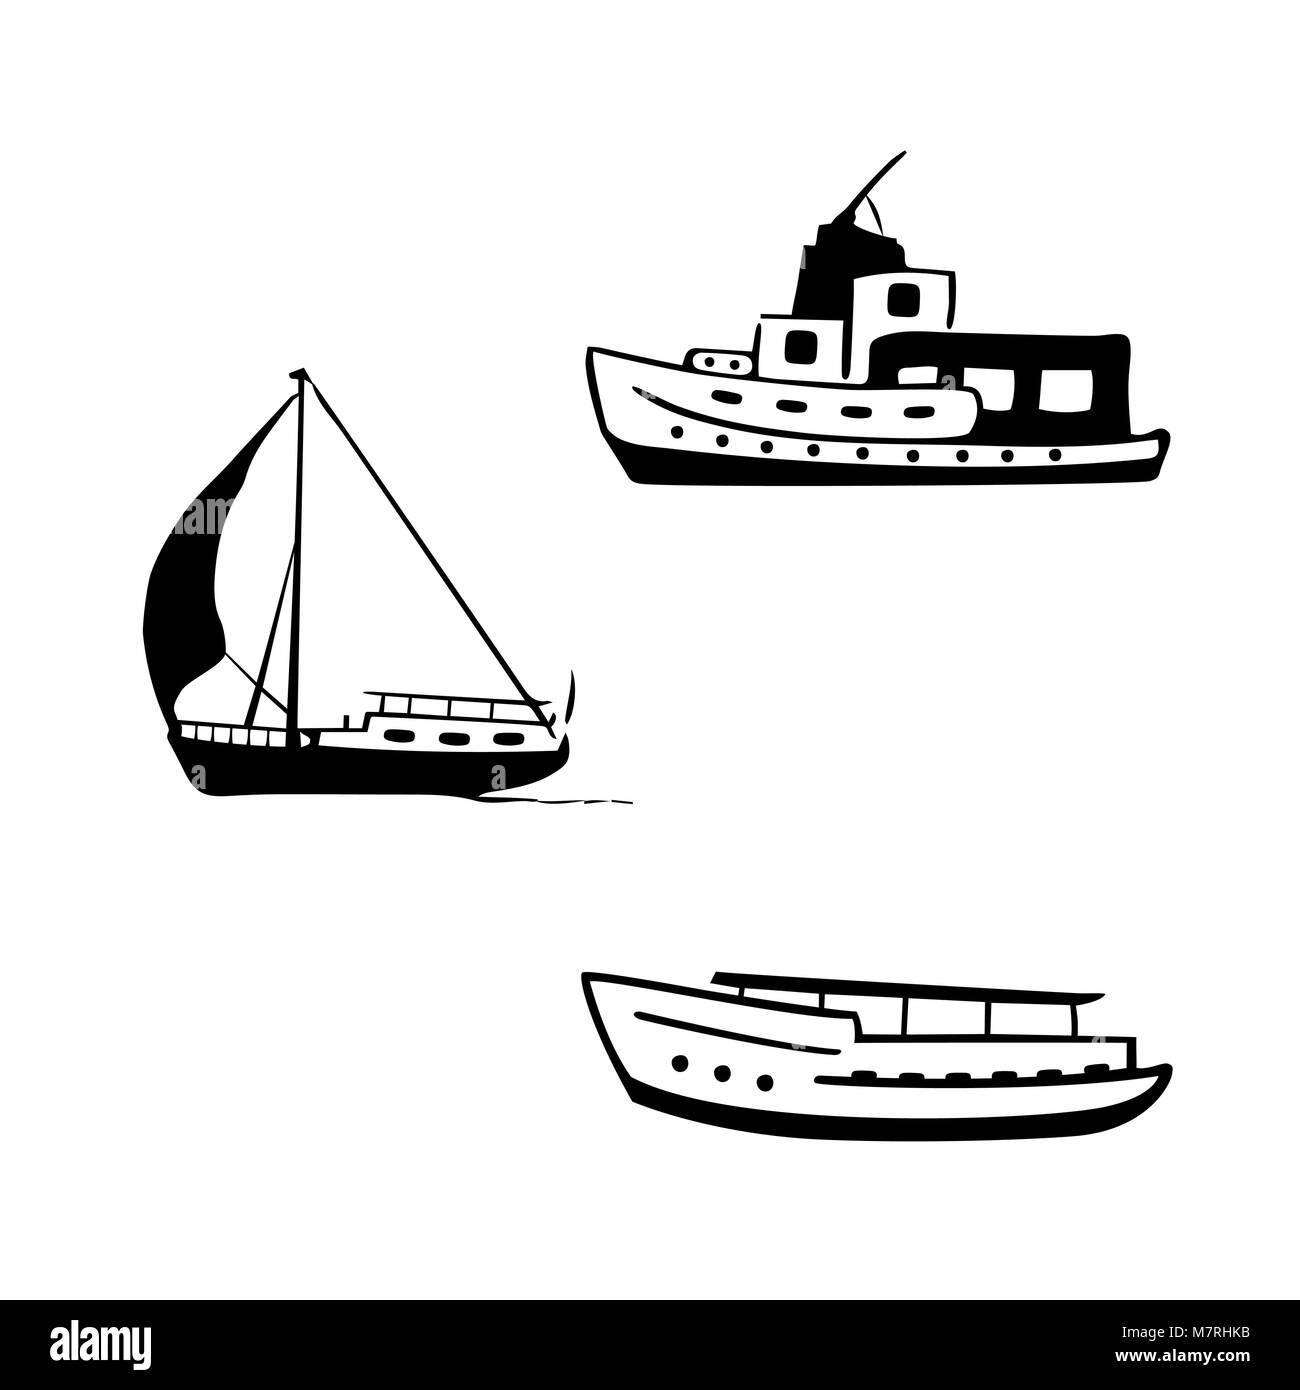 Ocean per il trasporto. Barche a vela e a motore, yacht, con una barca a motore. Illustrazione Vettoriale